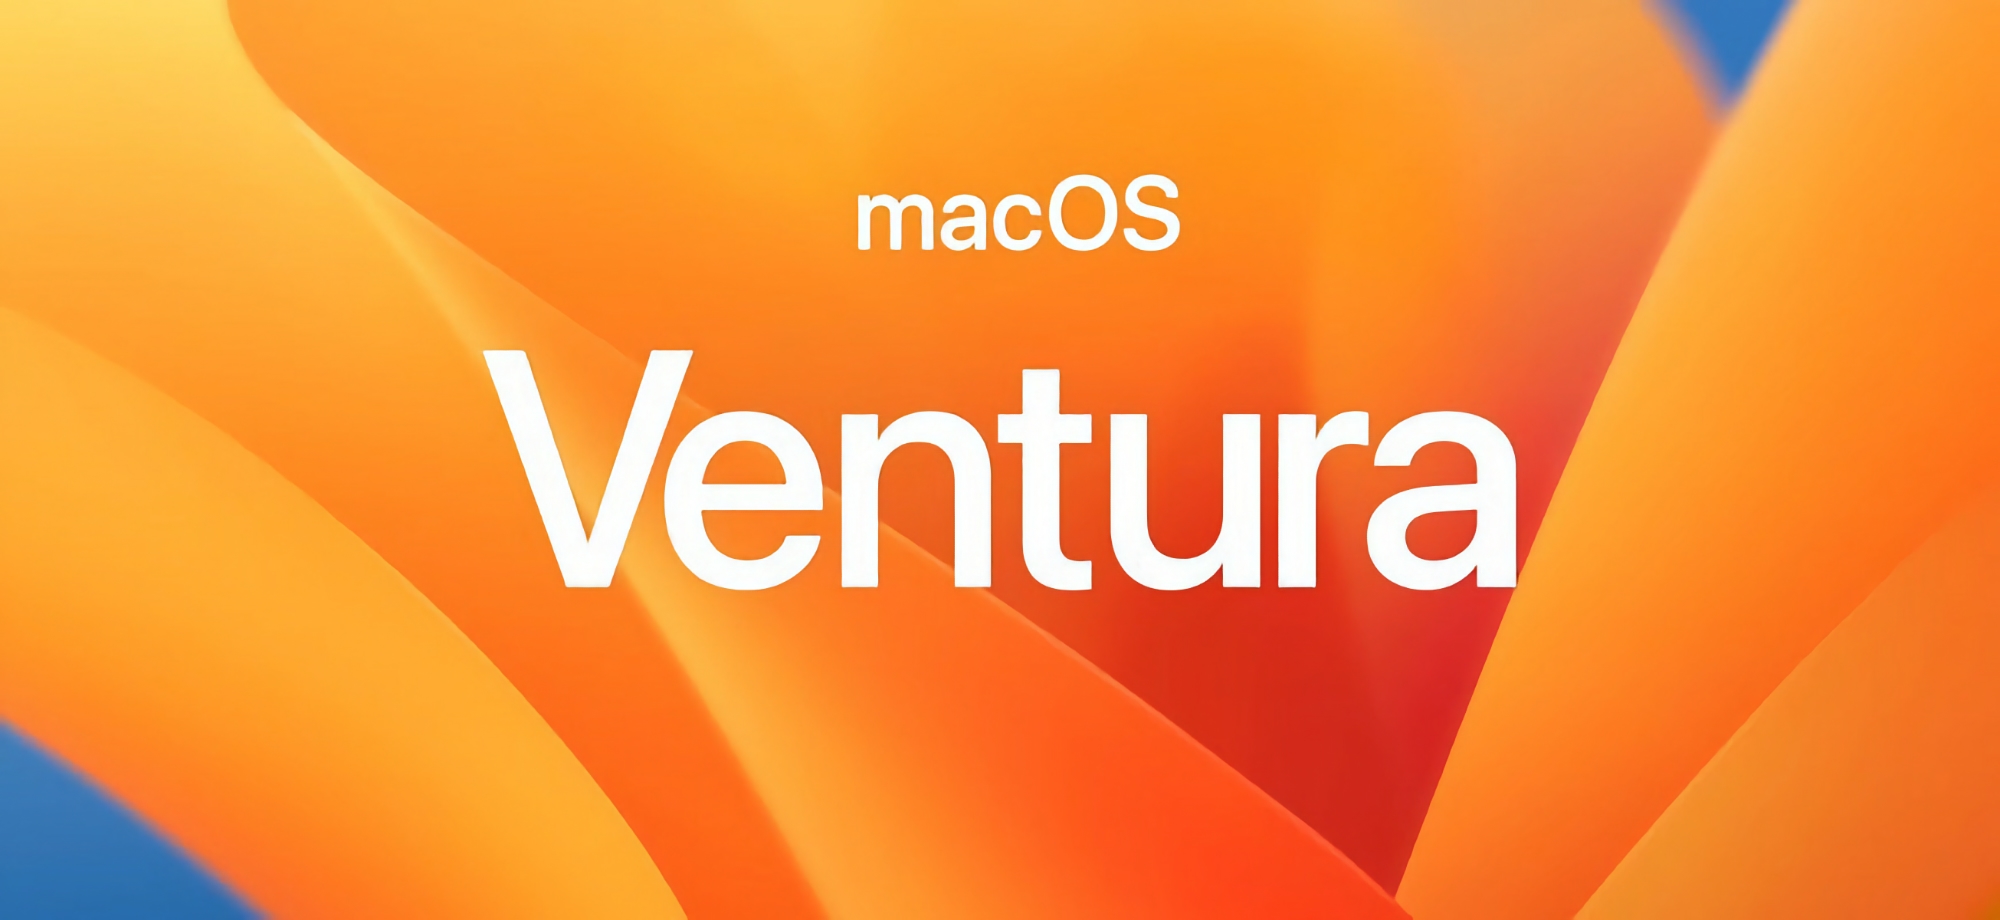 Dopo iOS 16.1.1 e iPadOS 16.1.1: Apple ha annunciato l'aggiornamento di macOS Ventura 13.0.1